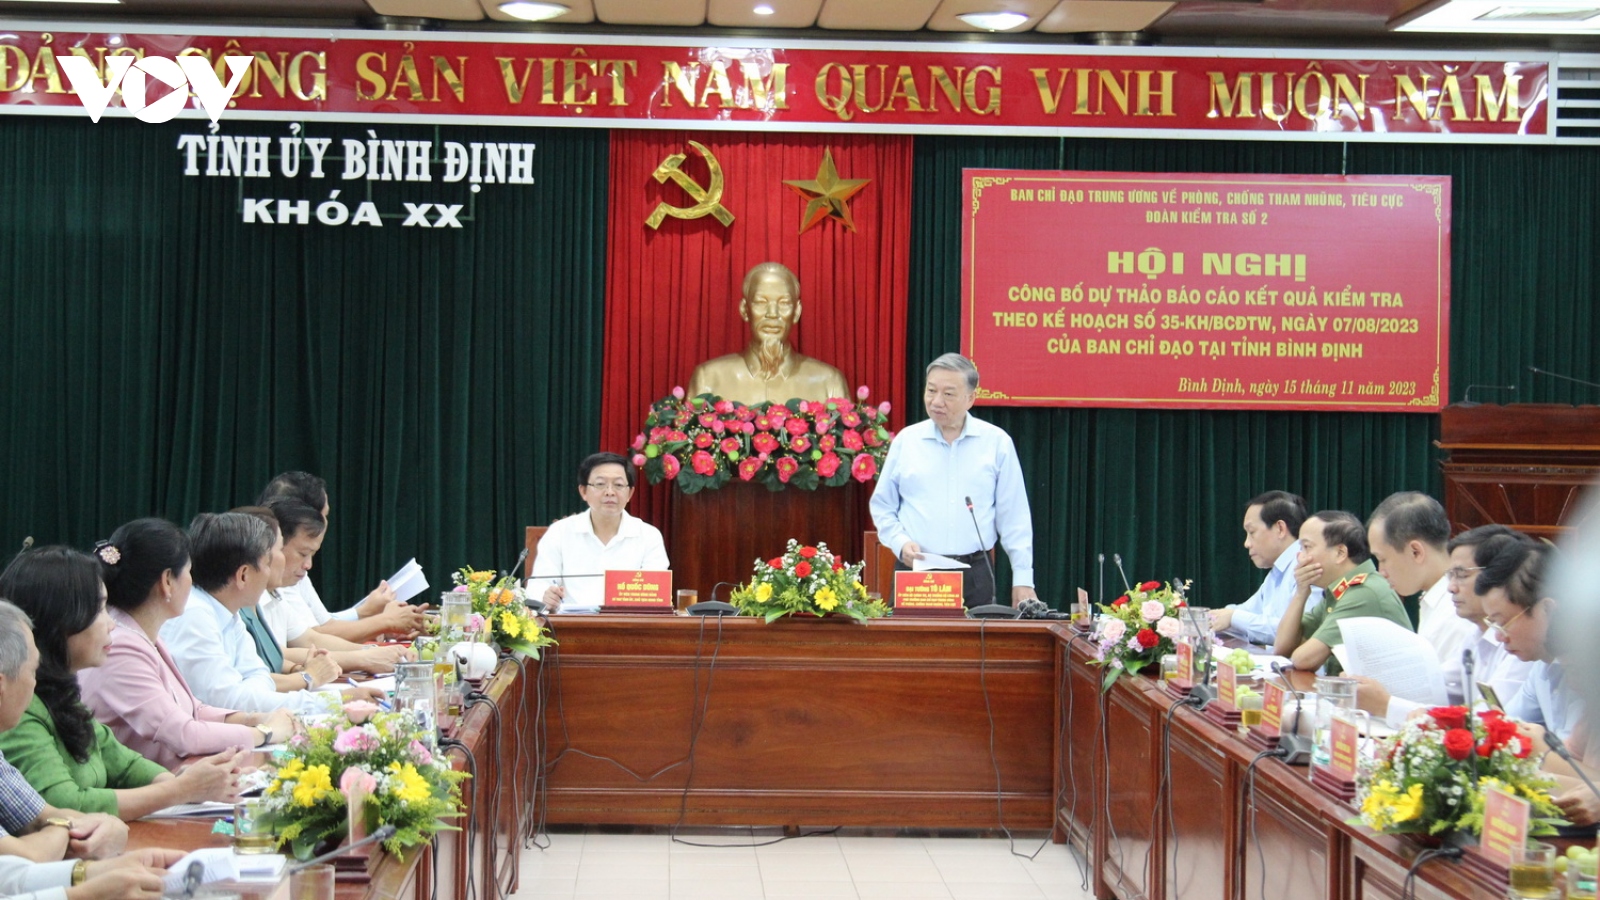 Công bố dự thảo báo cáo kết quả kiểm tra phòng chống tham nhũng tại Bình Định